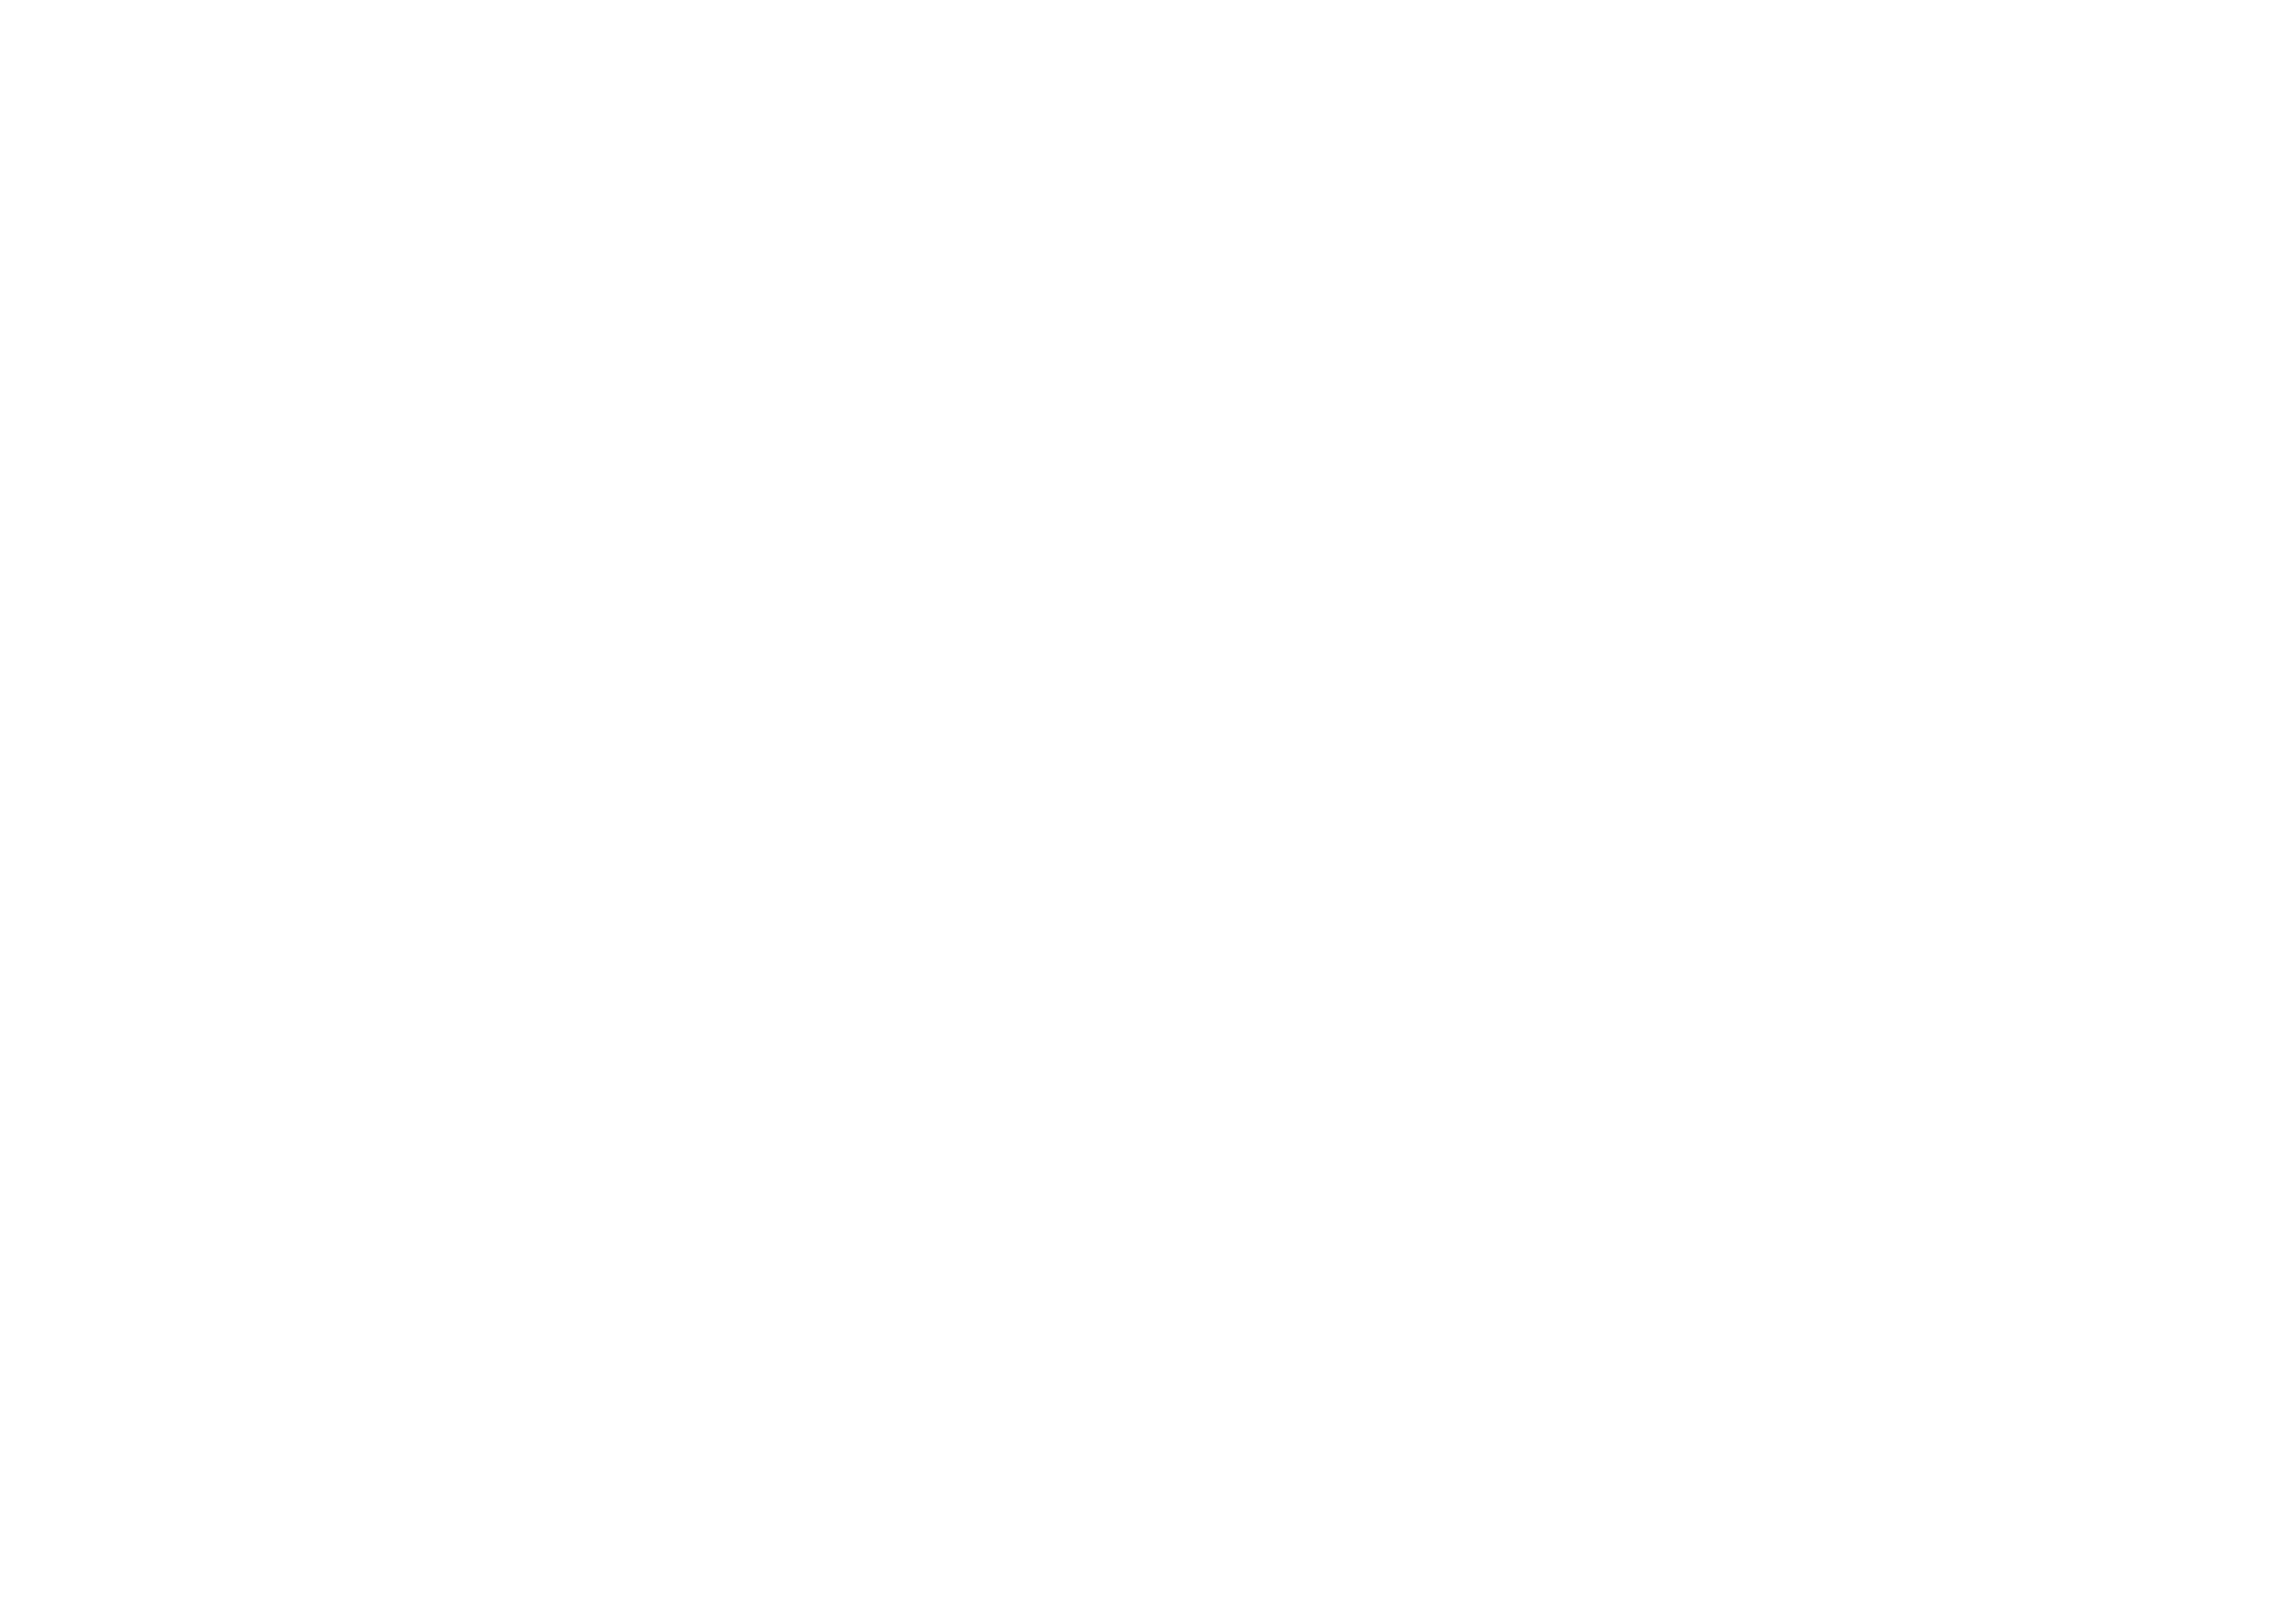 DJ Kim Chol